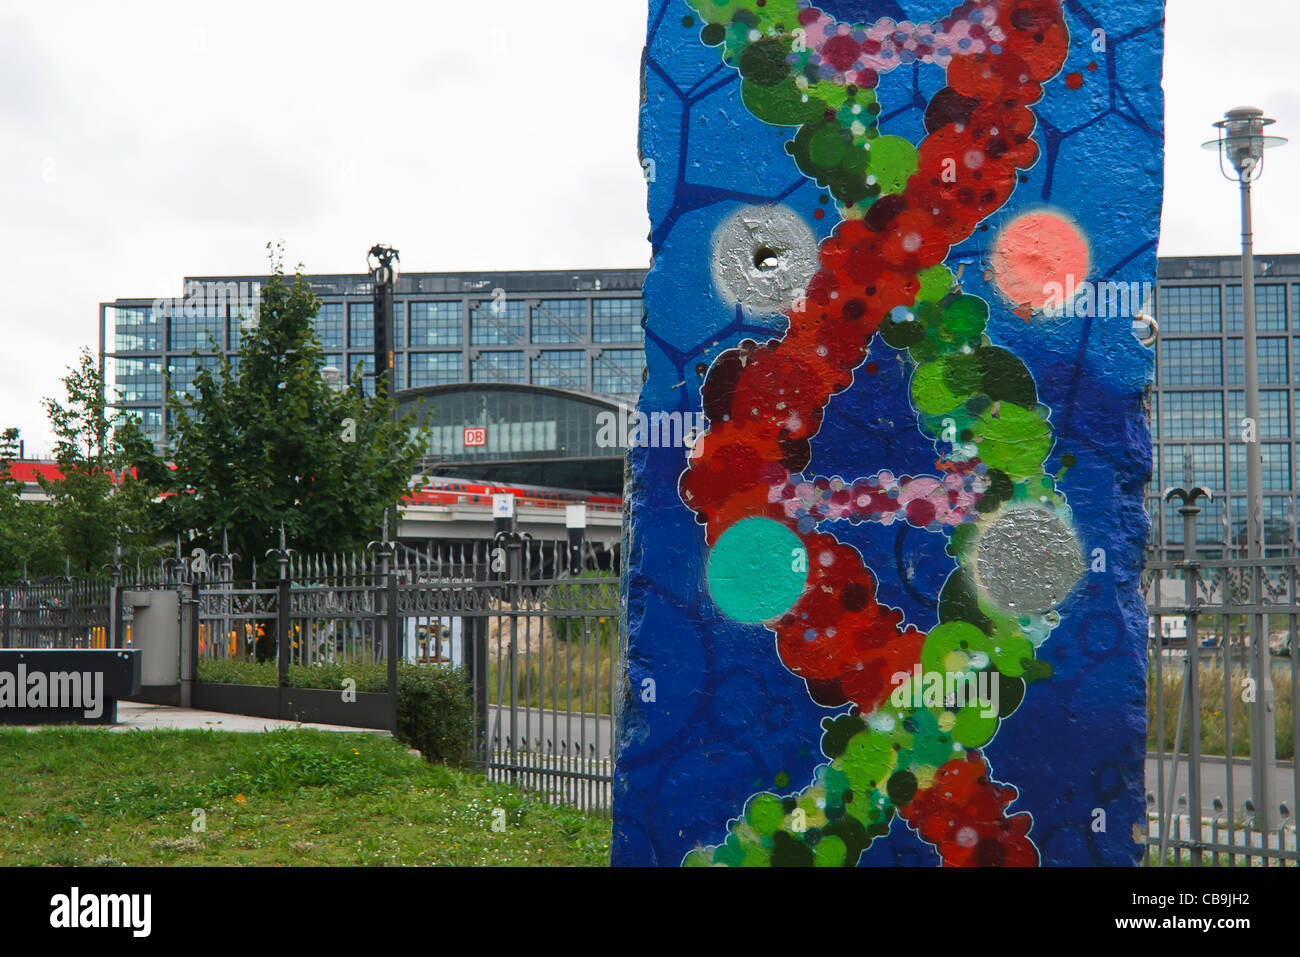 Doppel-Helix auf Fragment der Berliner Mauer vor der Berliner medizinischen historischen Museum Charité gemalt. Berlin, Deutschland. Stockfoto